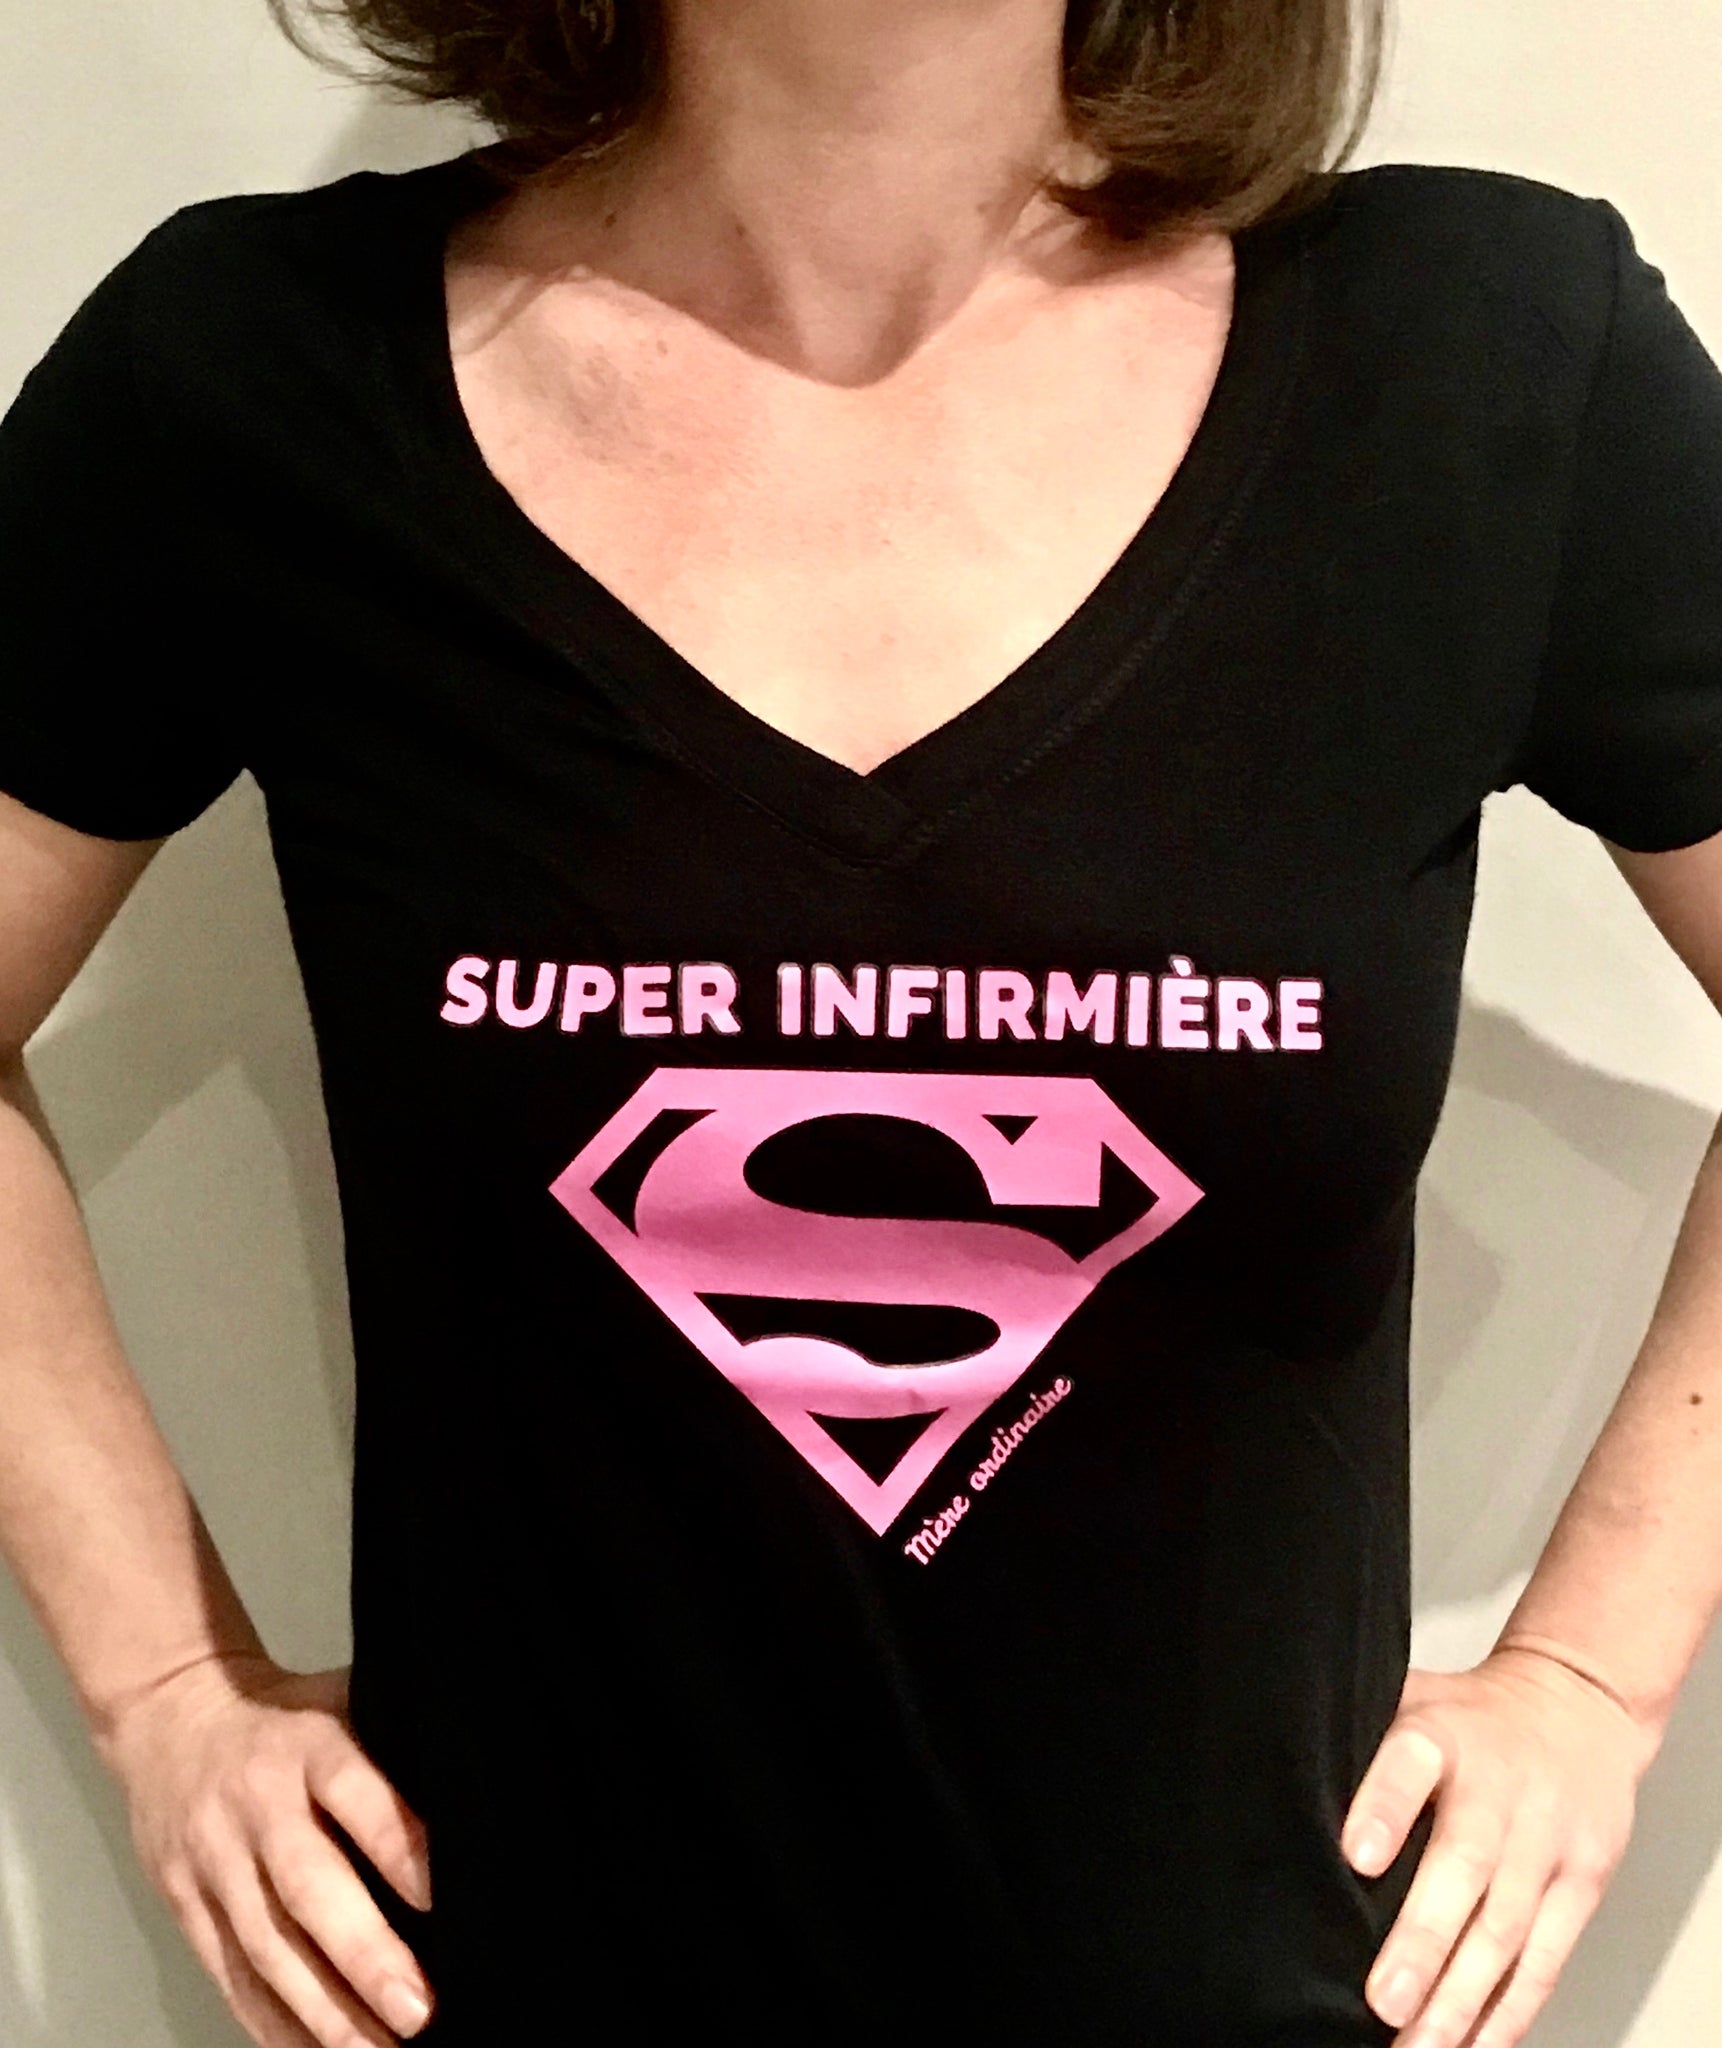 Super INFIRMIÈRE t-shirt *